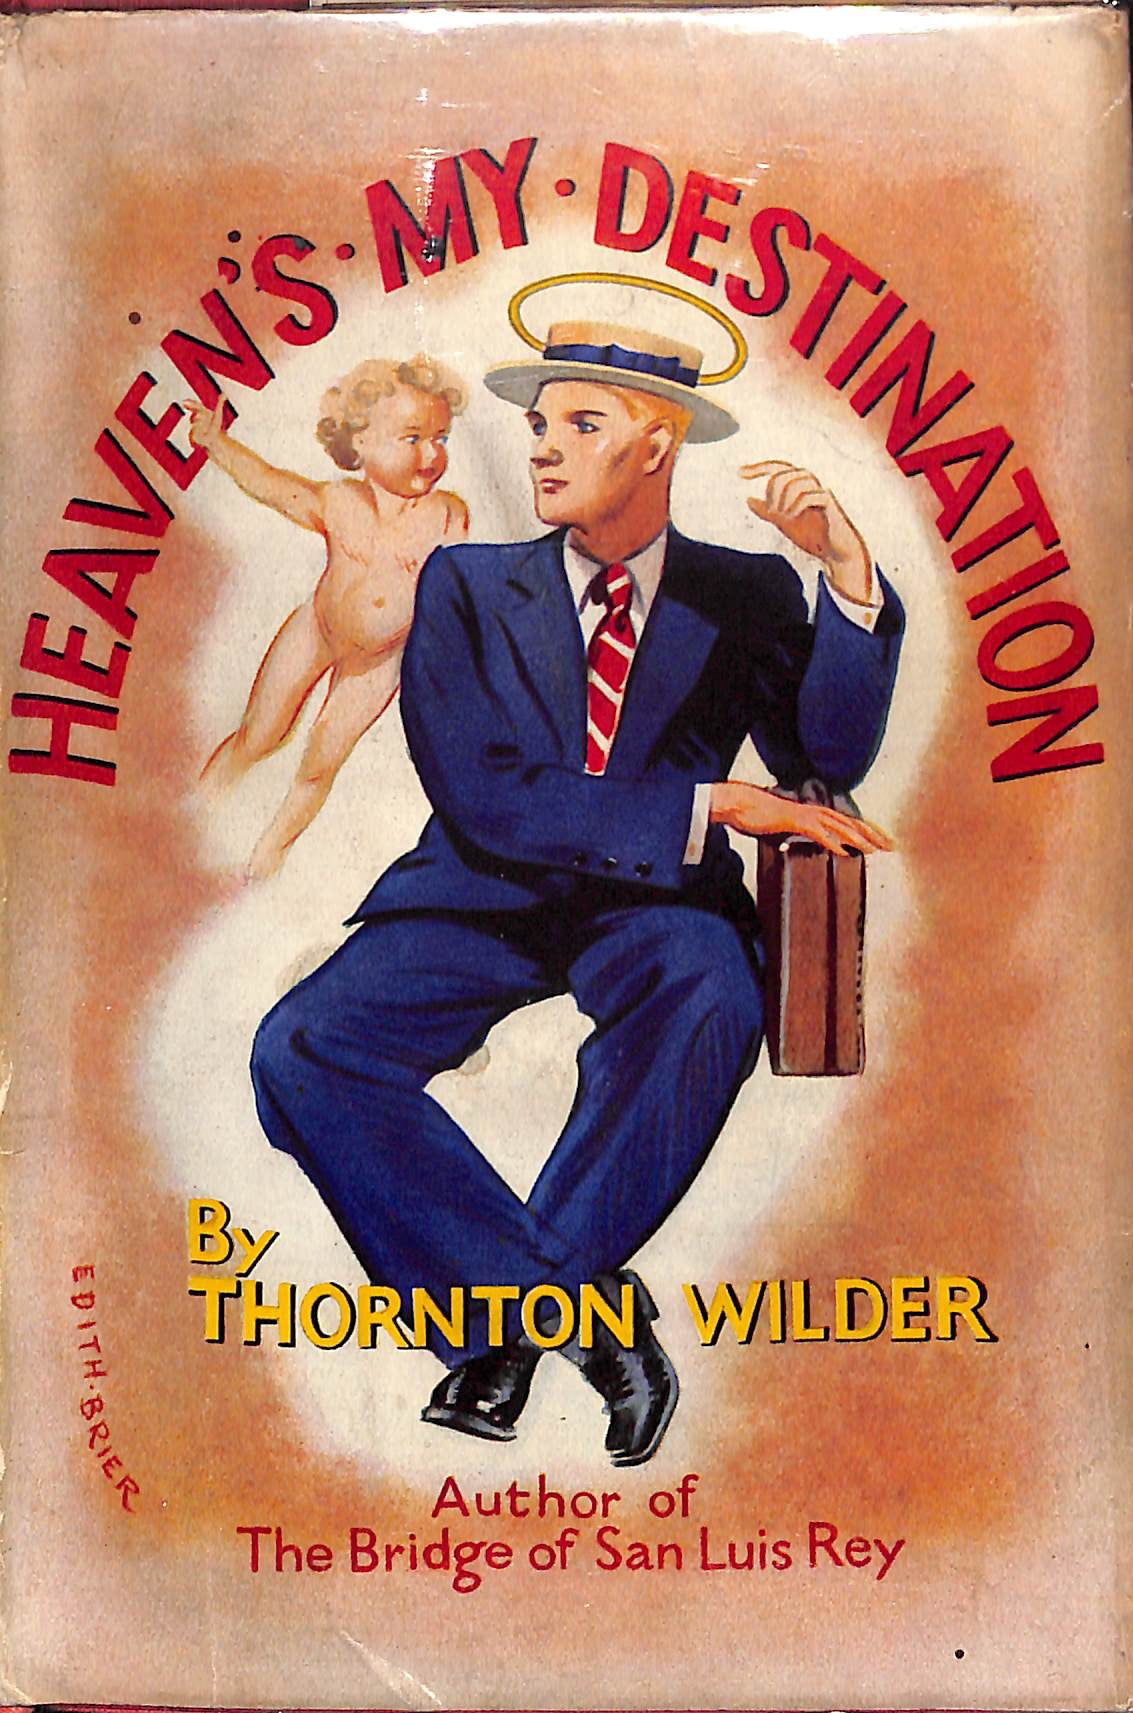 "Heaven's My Destination" WILDER, Thornton